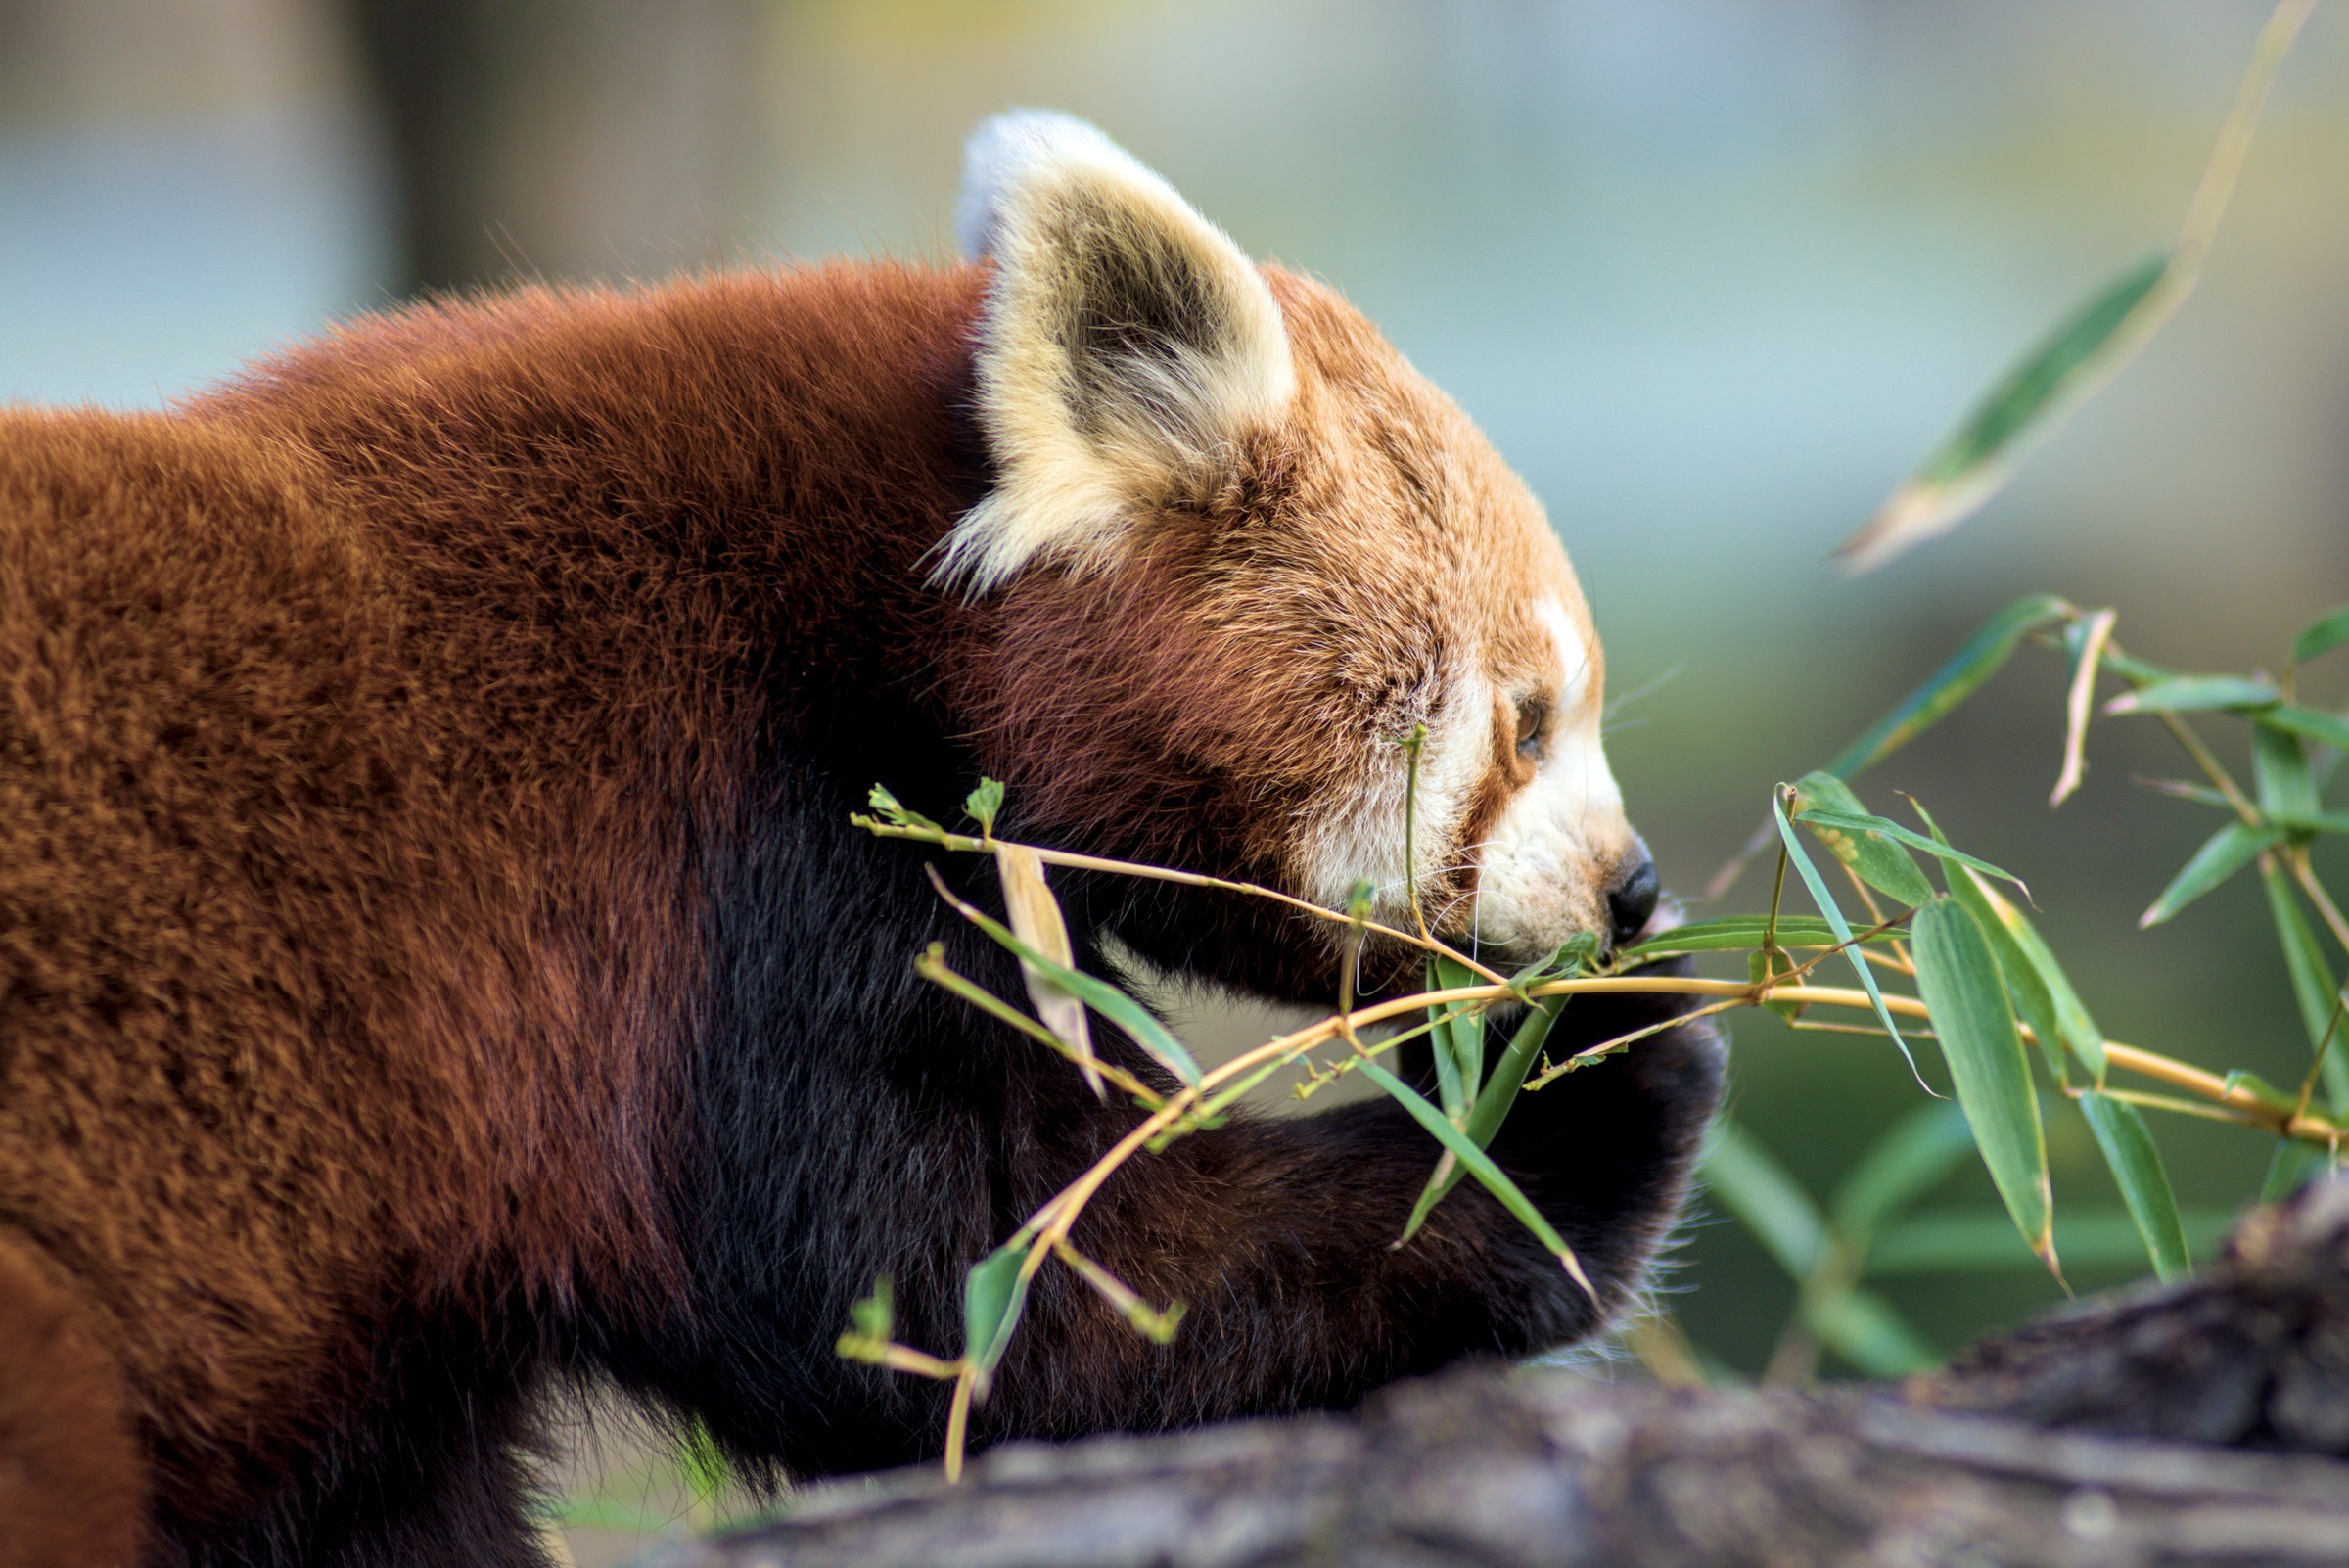 Red panda munching on some bamboo.